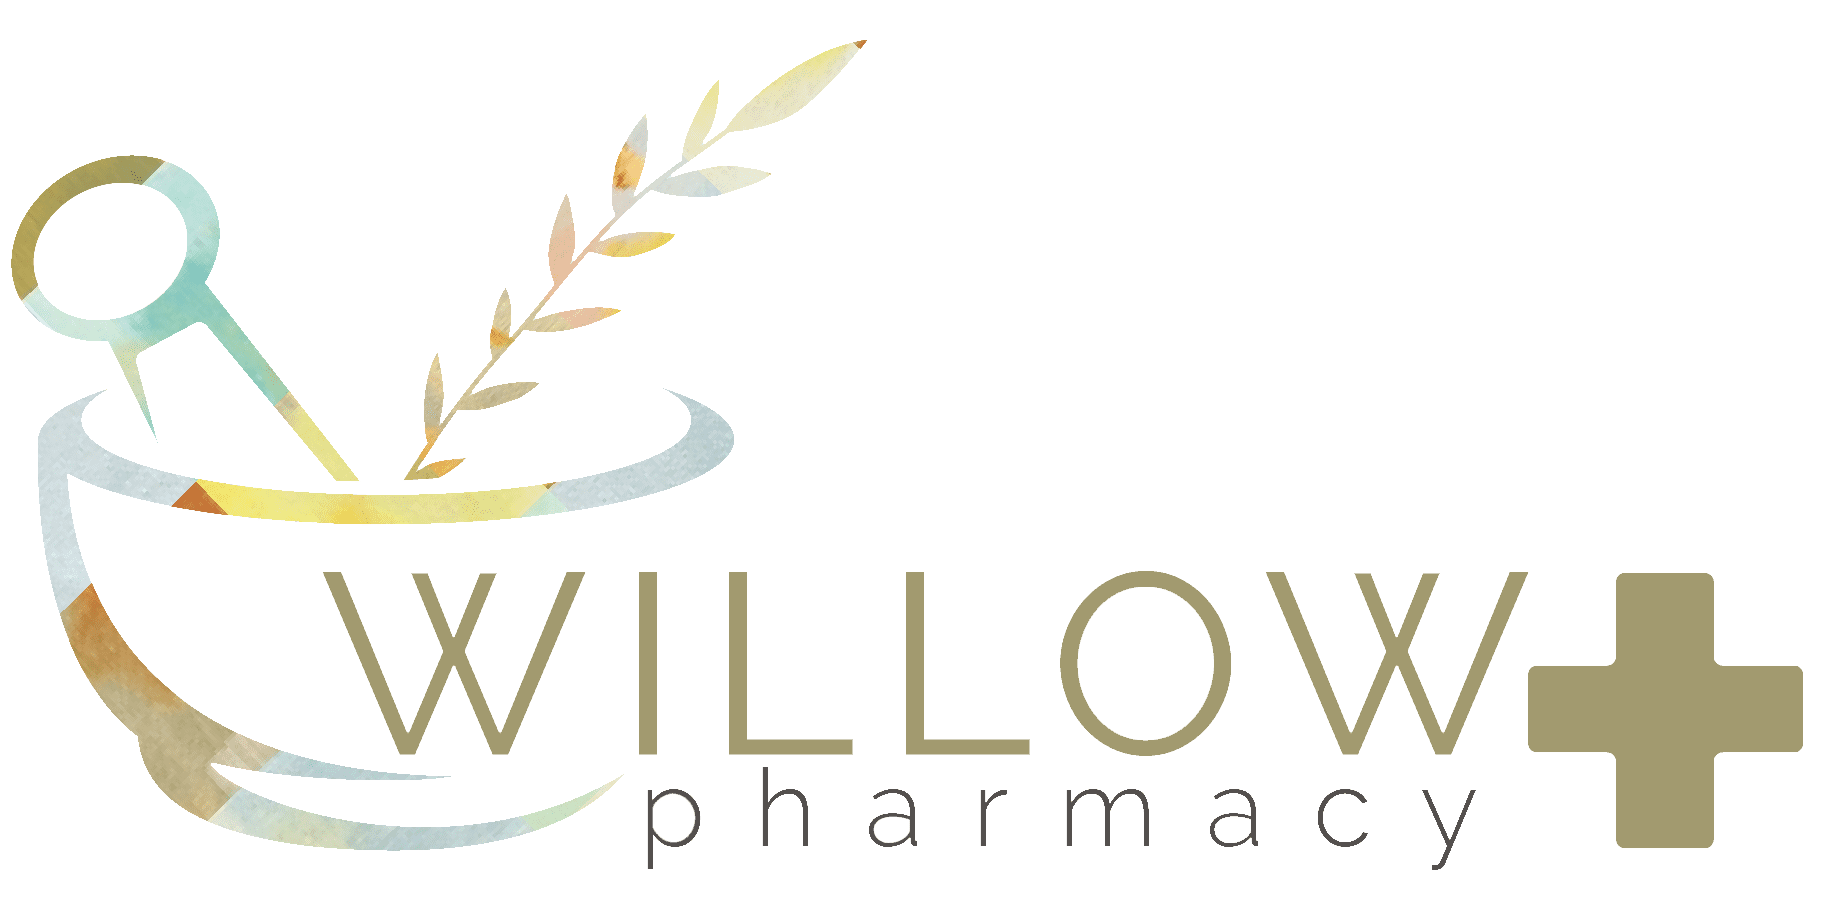 Willow Pharmacy, Inc. - SLIDELL - Louisiana Medical Marijuana Southeast Region 9 / CBD Retailer logo